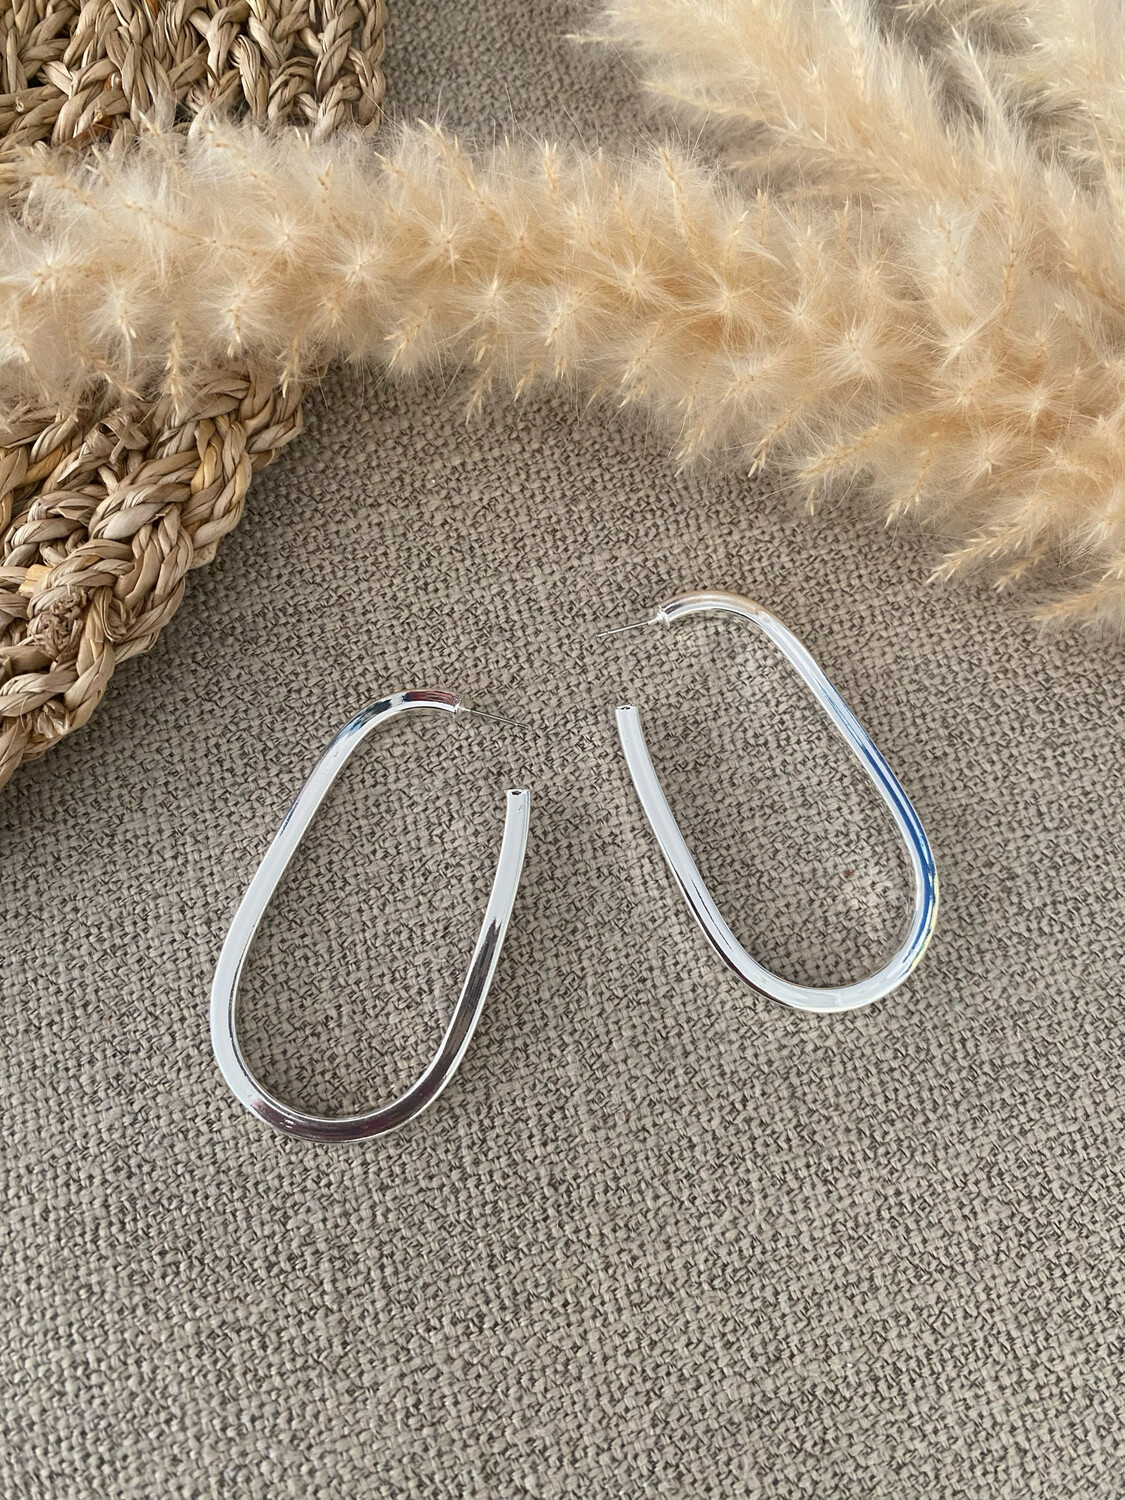 Silver Oval Hoops Earrings